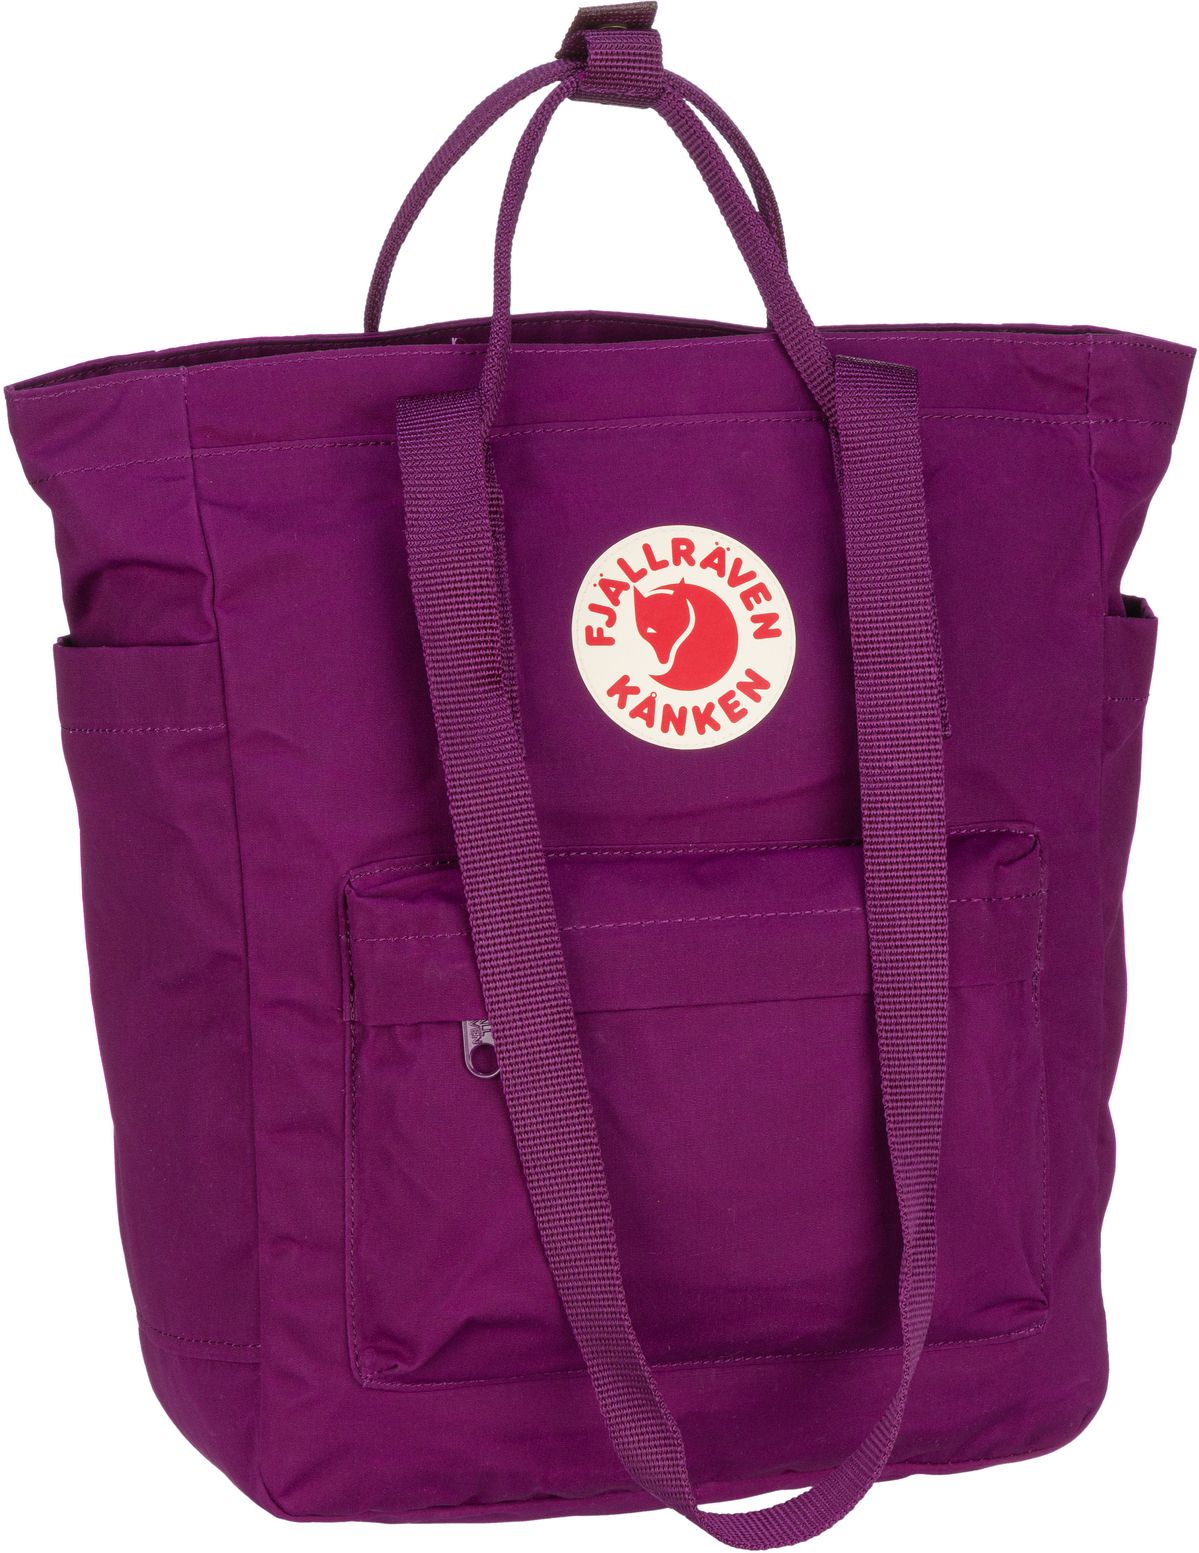 Fjällräven Handtasche Kanken Totepack Royal Purple (14 Liter)  - Onlineshop Taschenkaufhaus